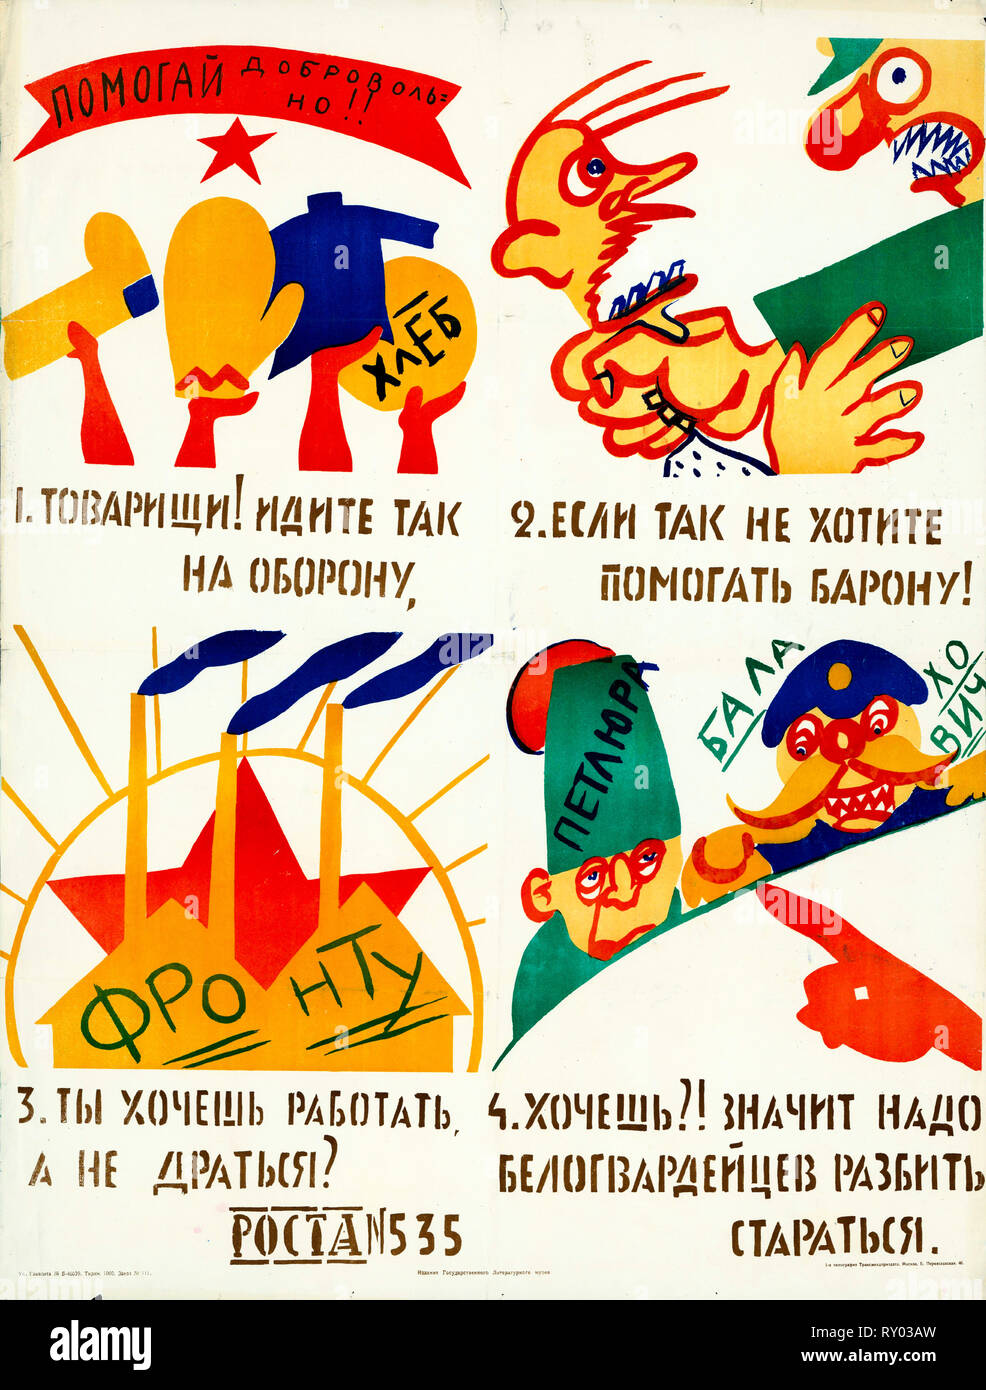 ROSTA Fenster, Stenciled sowjetische Propaganda Poster, helfen freiwillig! Genossen! Auf Verteidigung gehen, also, wenn Sie nicht möchten, dass der Baron zu helfen!, 1920 Stockfoto